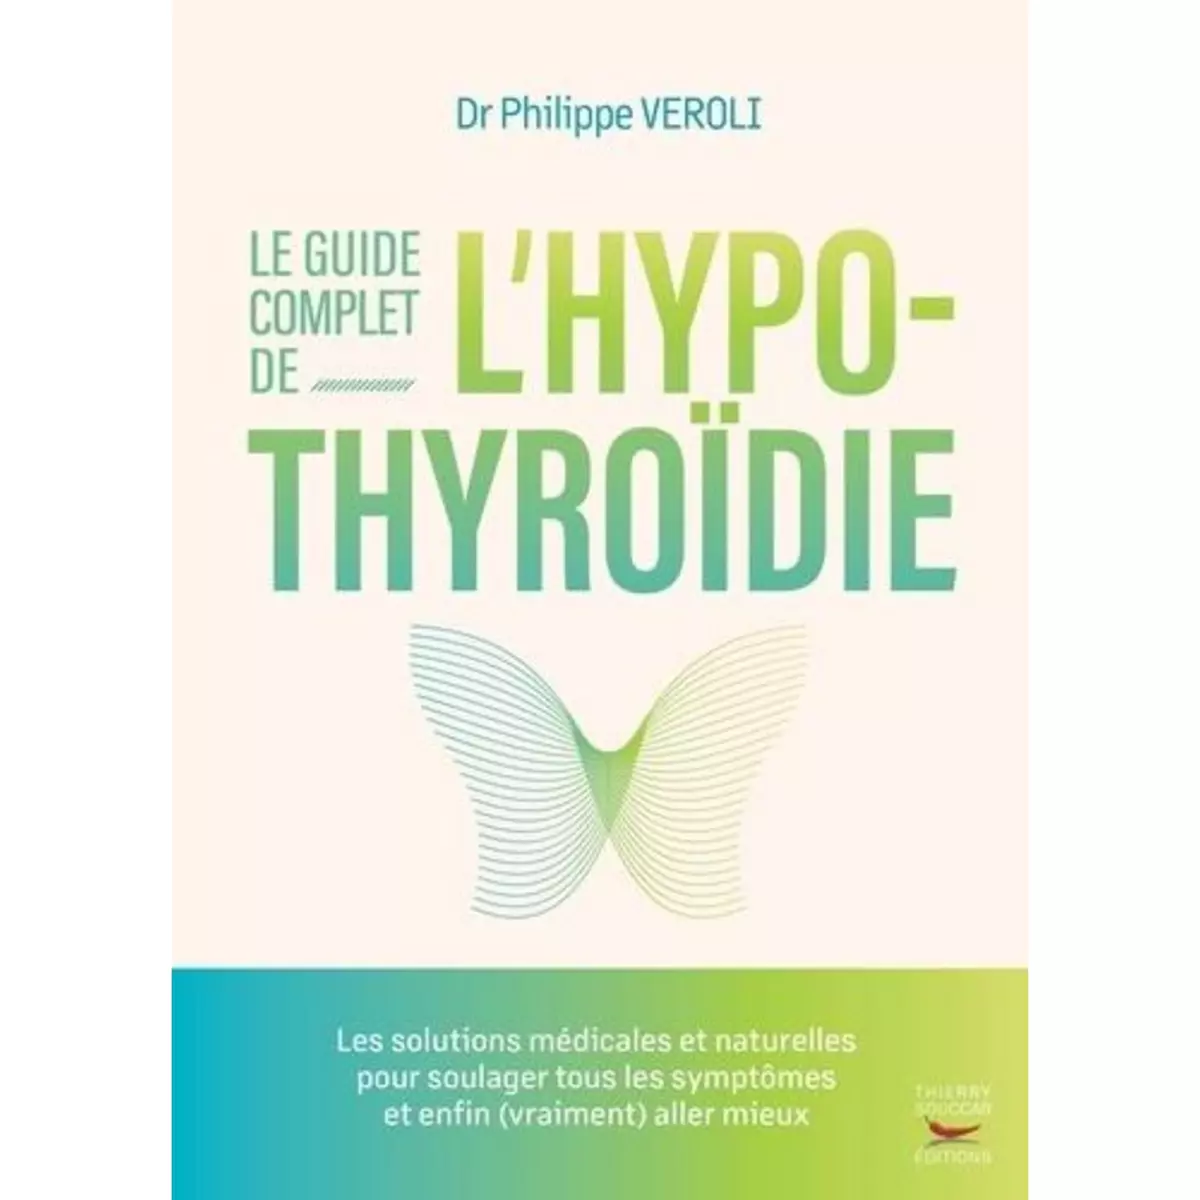  LE GUIDE COMPLET DE L'HYPOTHYROIDIE, Veroli Philippe